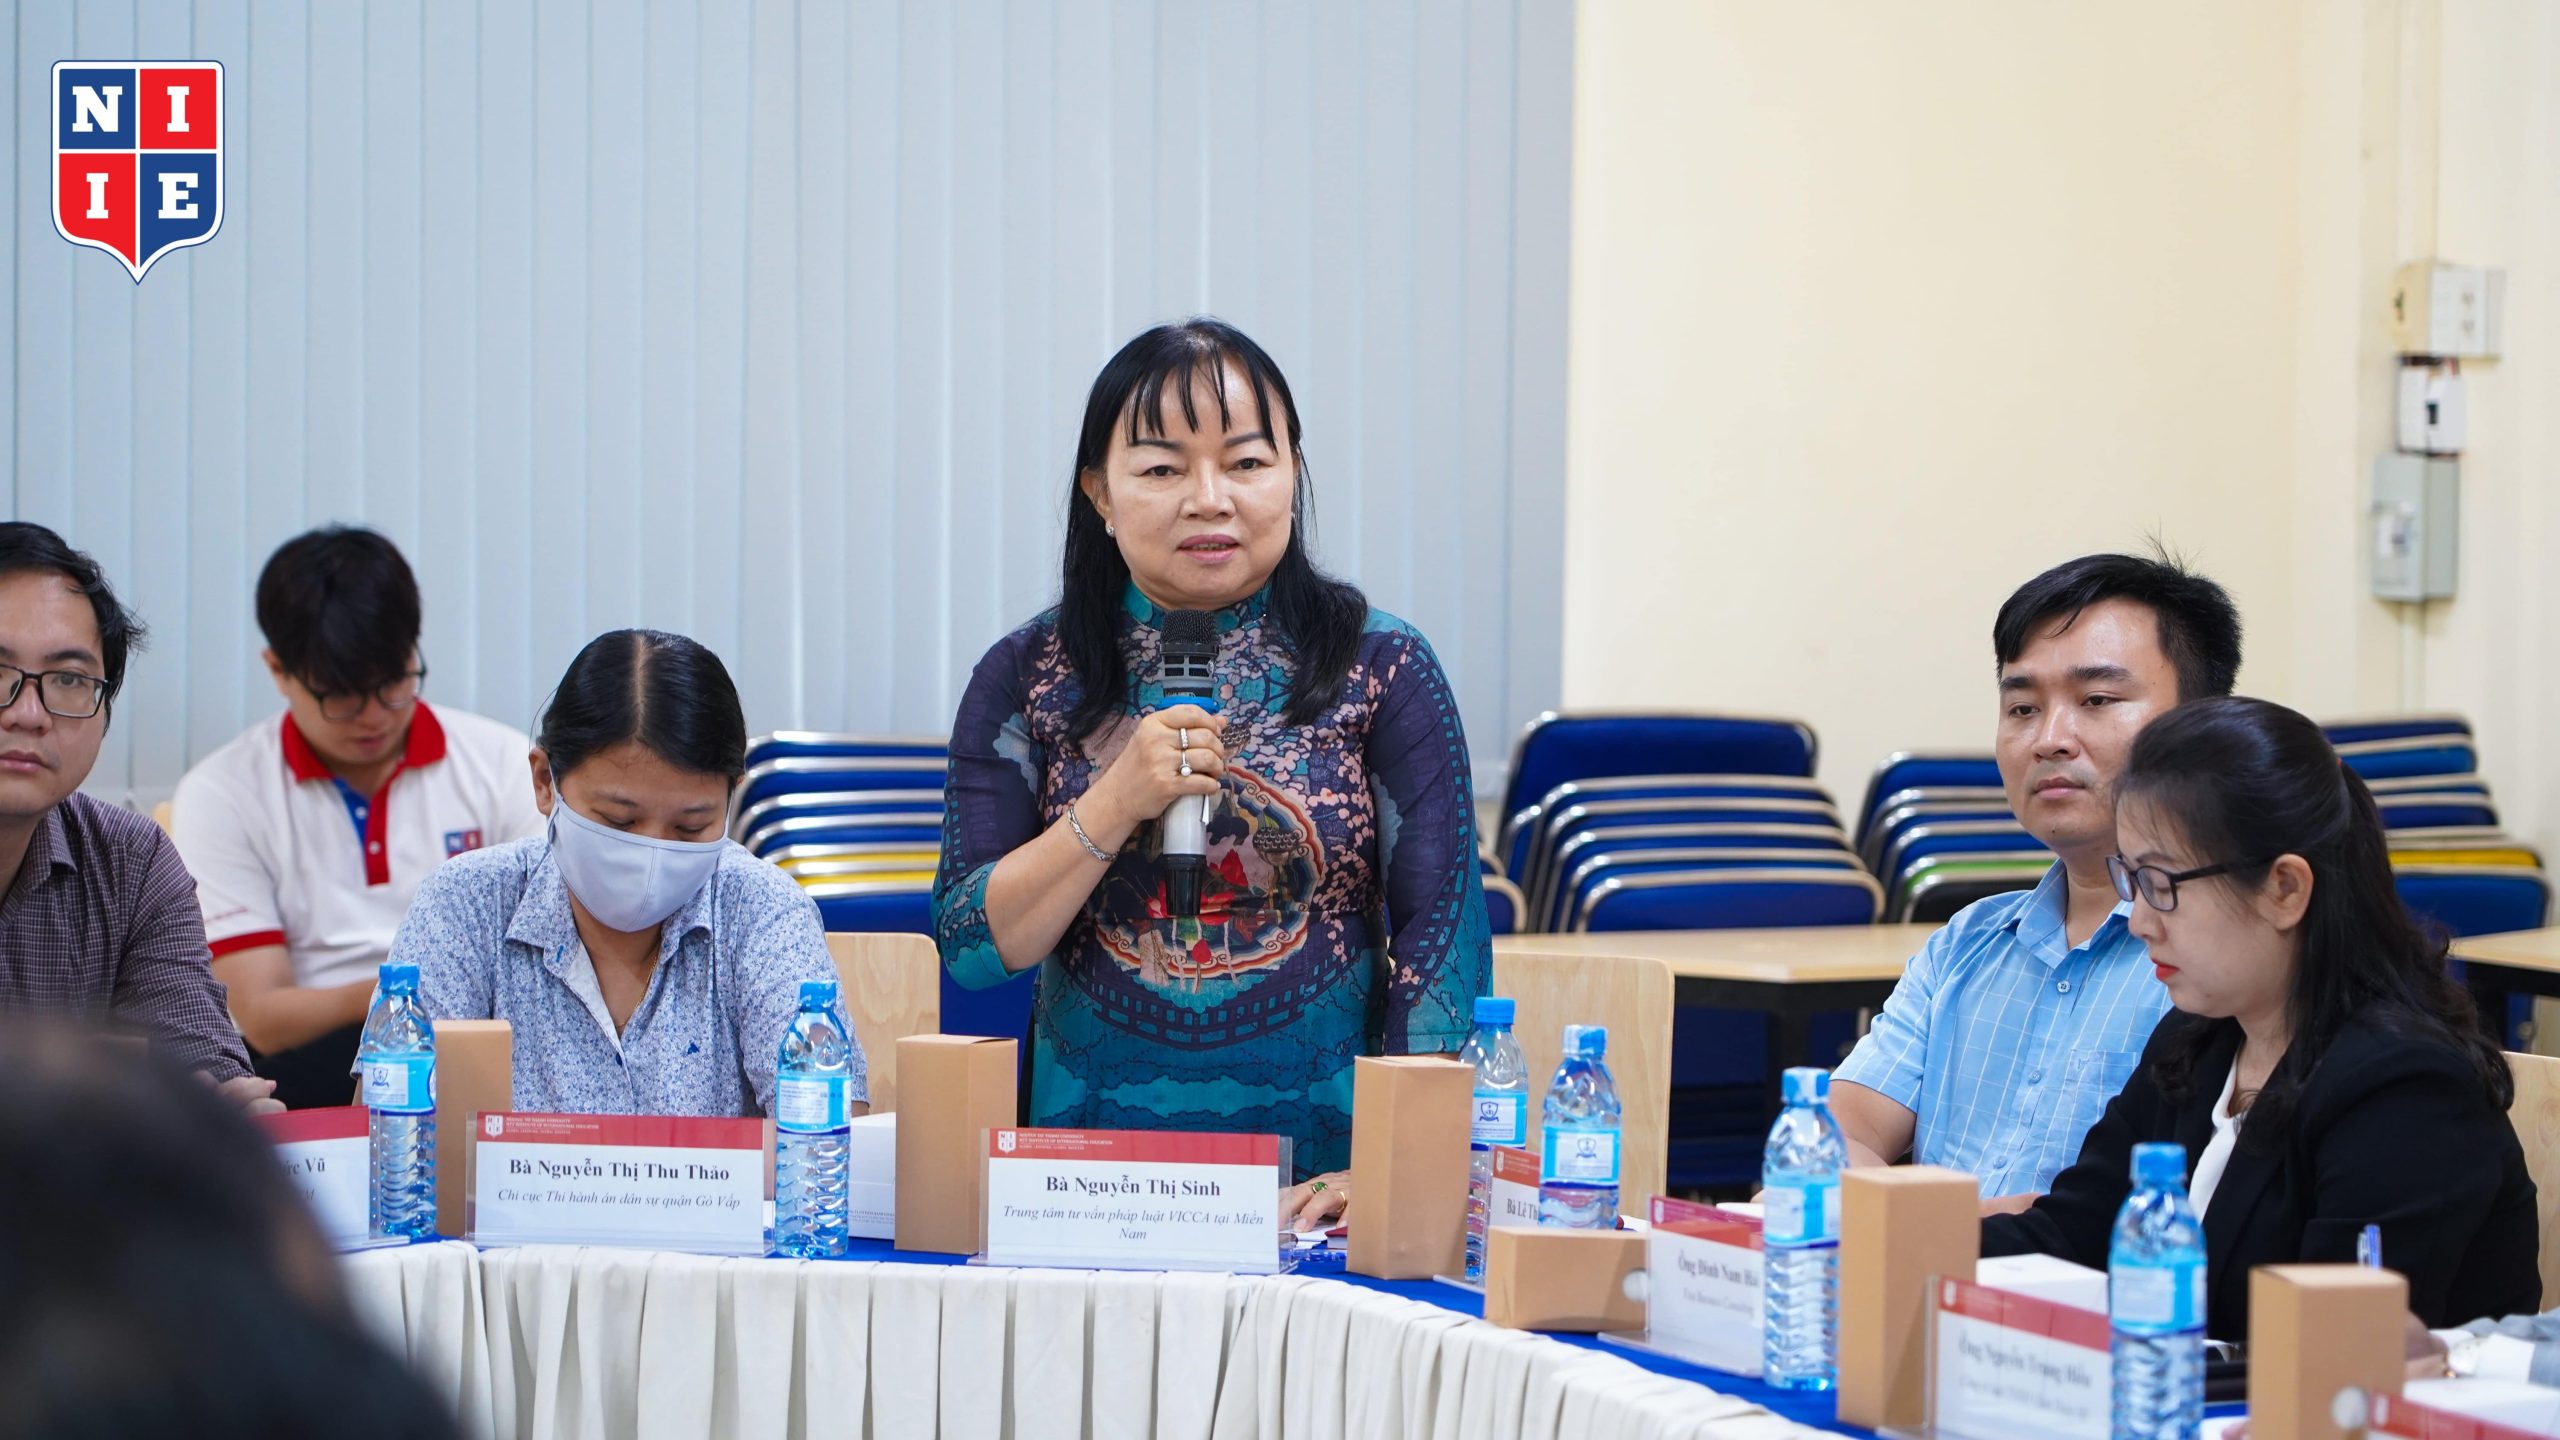 Bà Nguyễn Thị Sinh, Giám đốc Trung tâm tư vấn pháp luật VICCA tại Miền Nam cho biết nhà trường nên rèn luyện sự tự tin, bản lĩnh cho sinh viên bằng hoạt động thực tập, thực hành